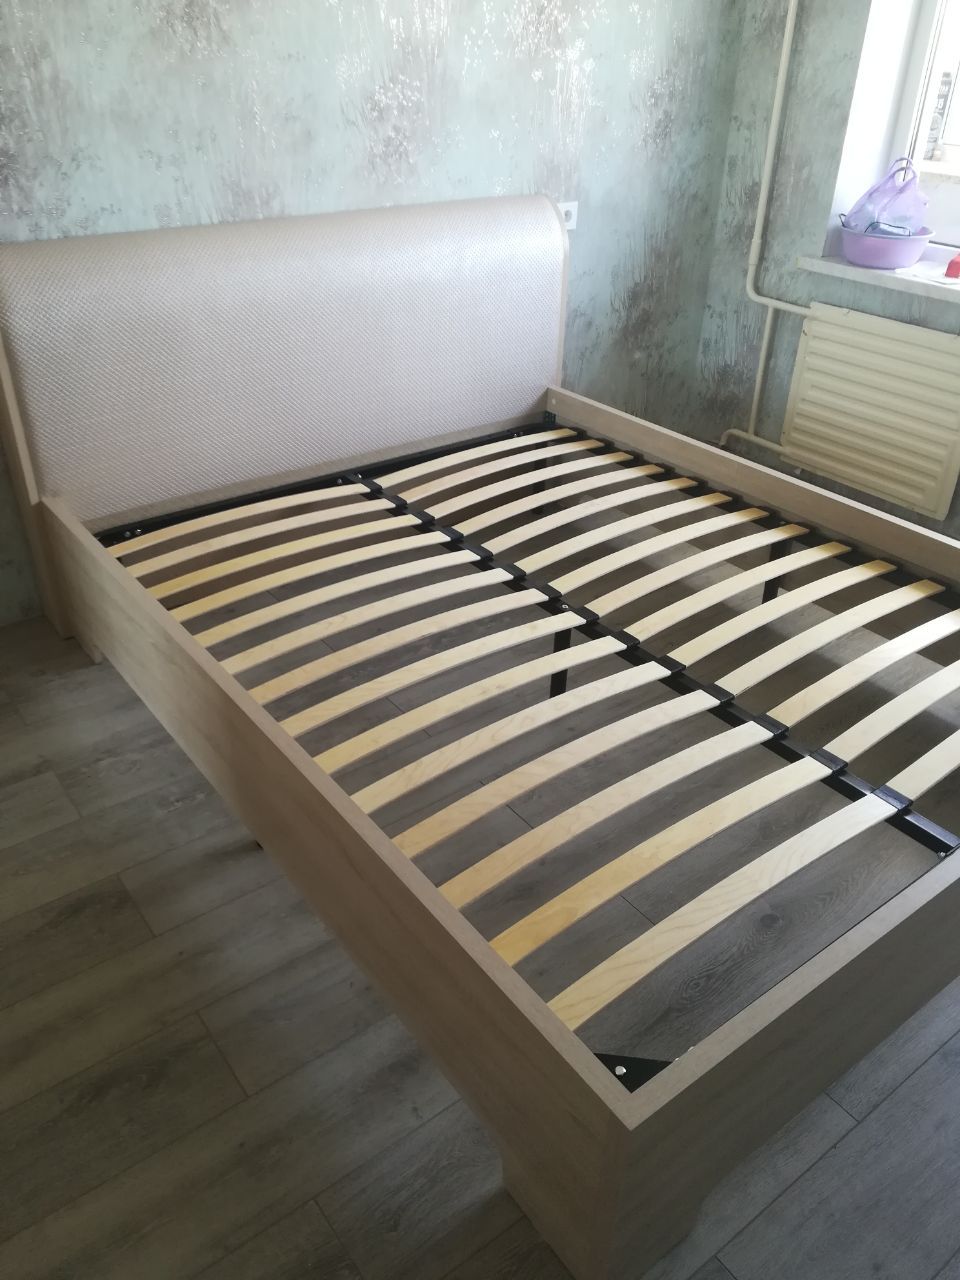 Односпальная кровать "Барселона"  90 х 200 с подъемным механизмом цвет венге / punto 19660